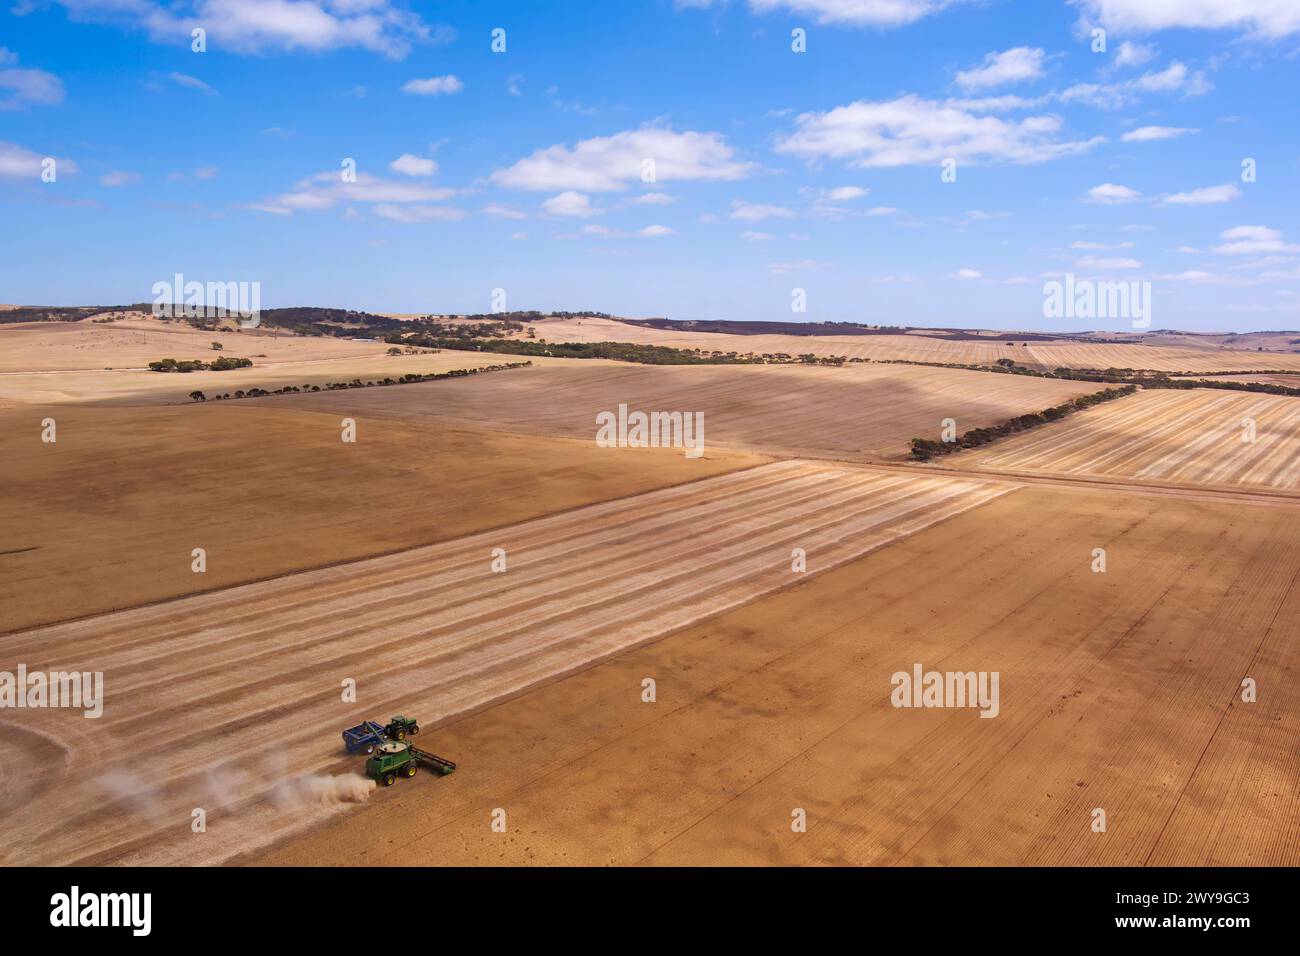 La mietitrebbiatrice aerea che raccoglie un campo di grano vicino a Tumby Bay Eyre Peninsula, Australia meridionale Foto Stock